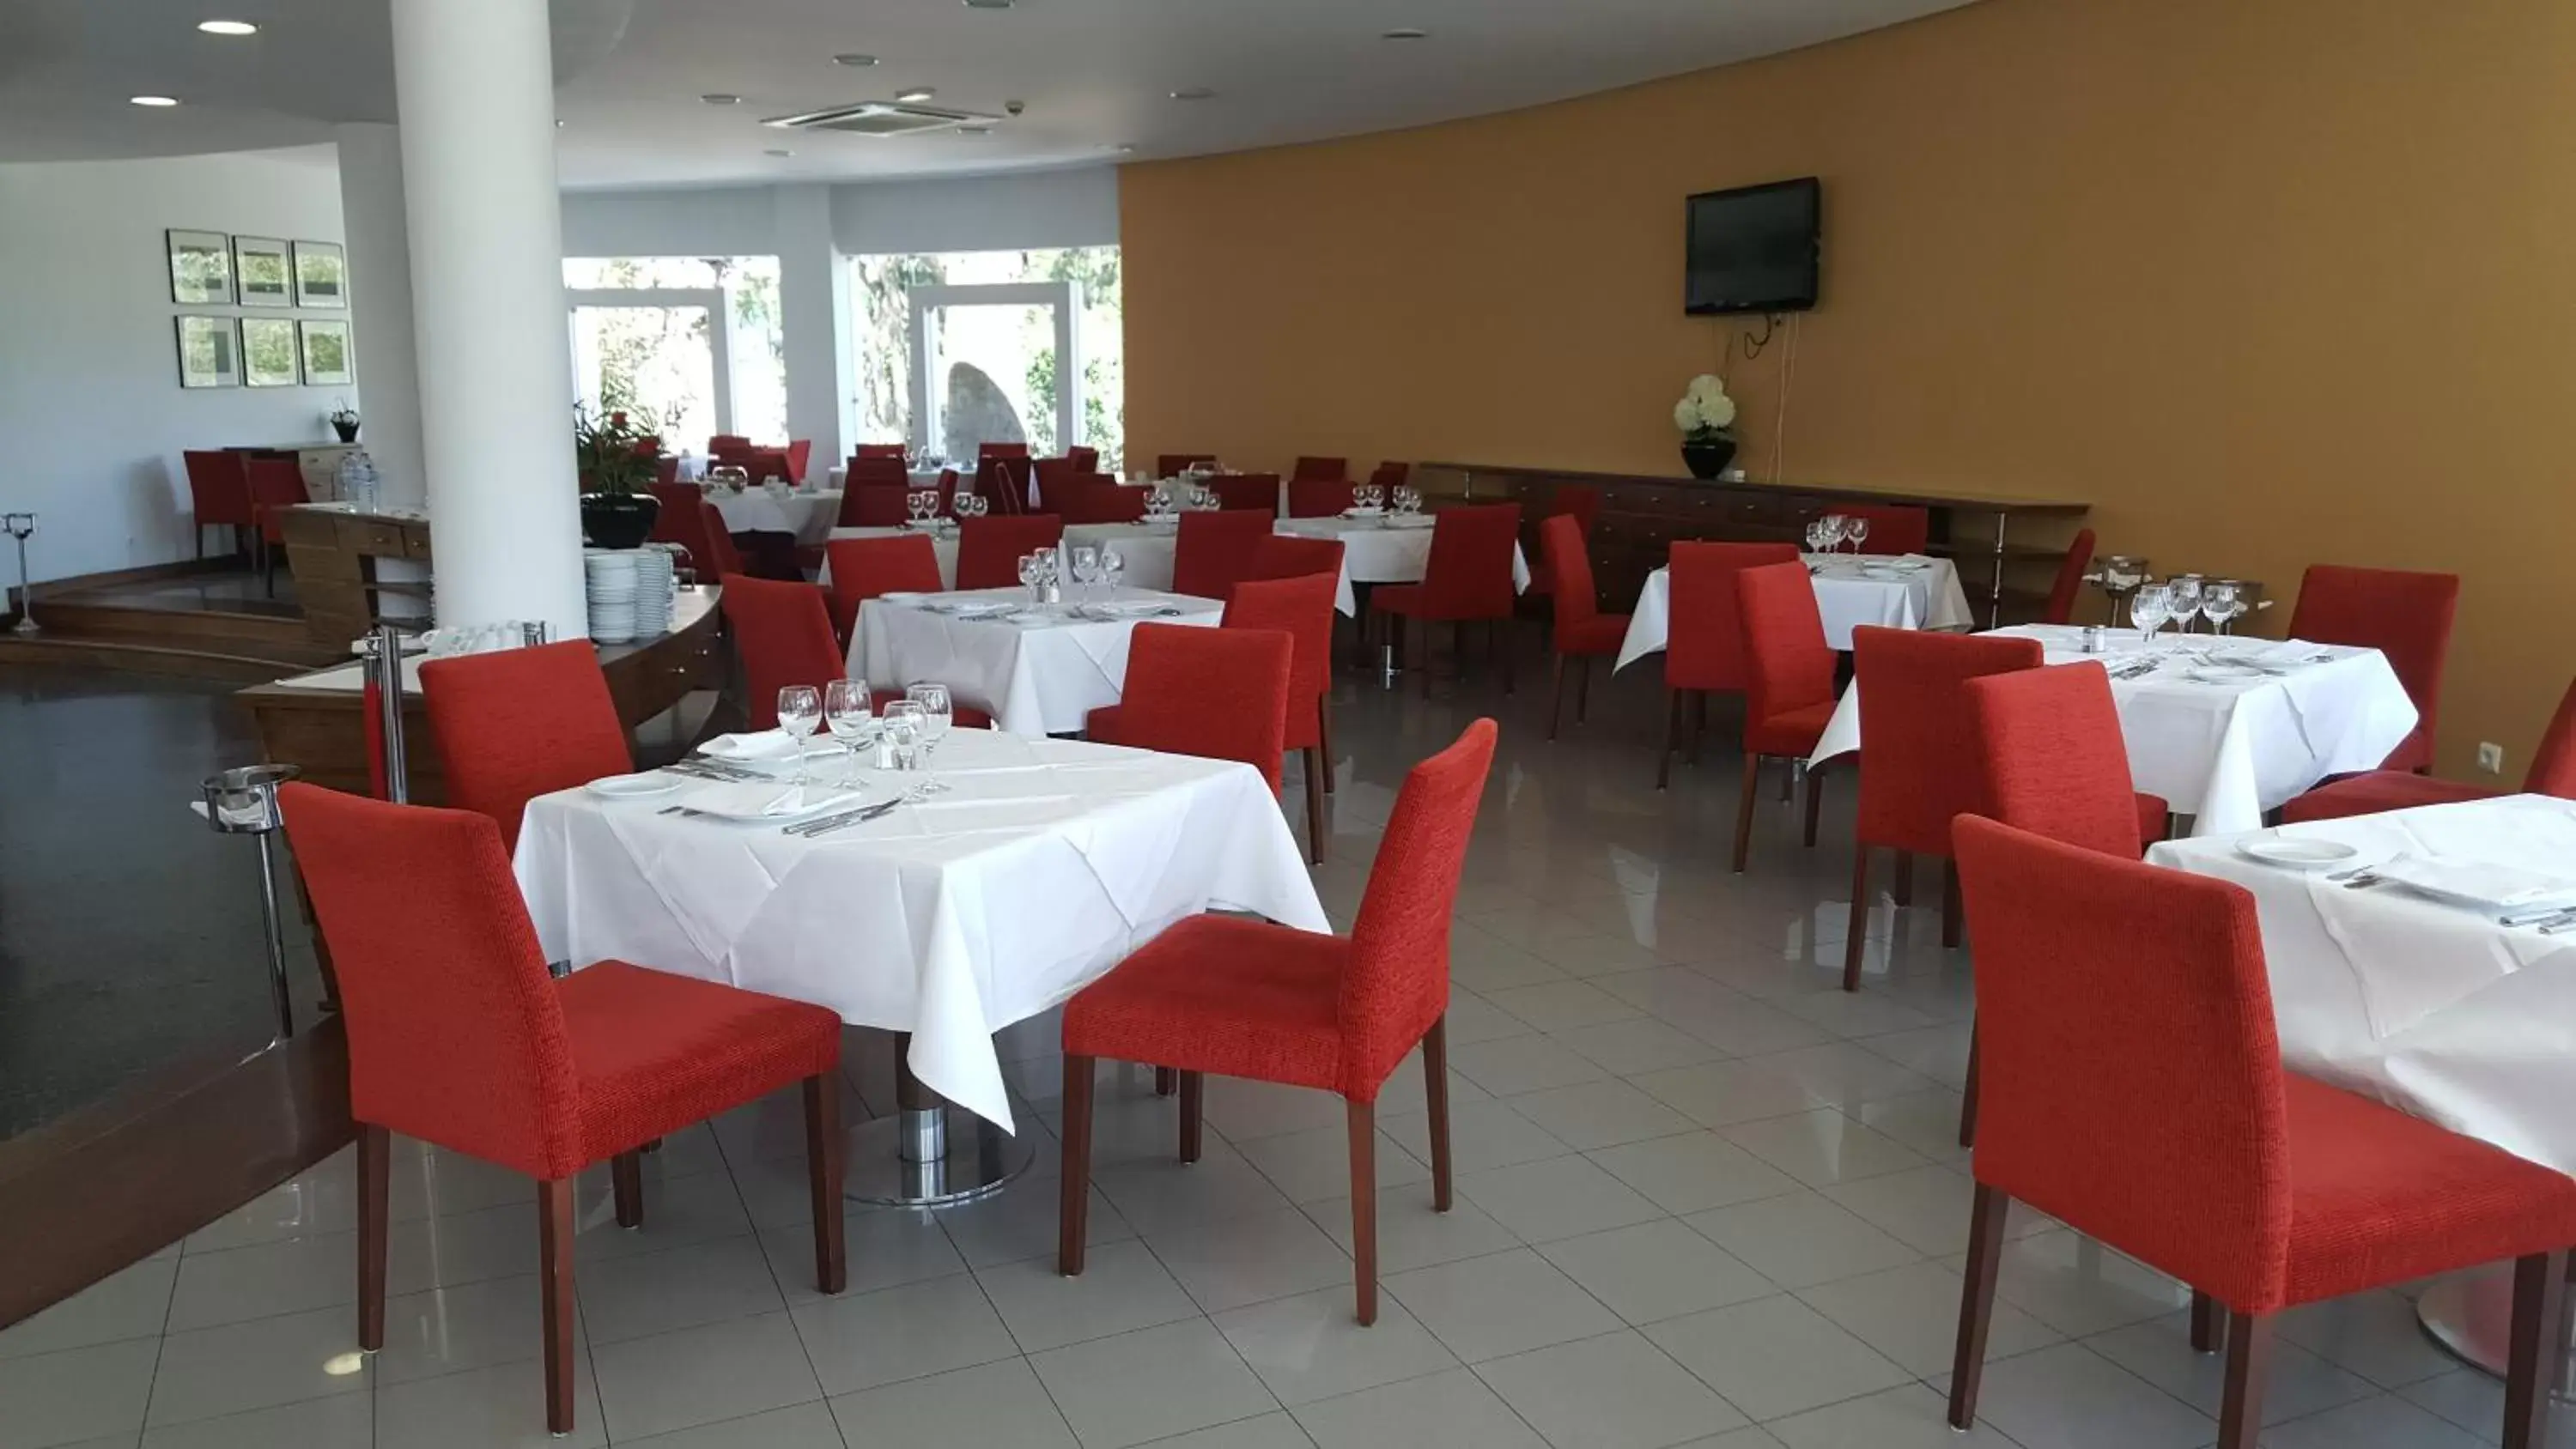 Restaurant/places to eat in Leziria Parque Hotel